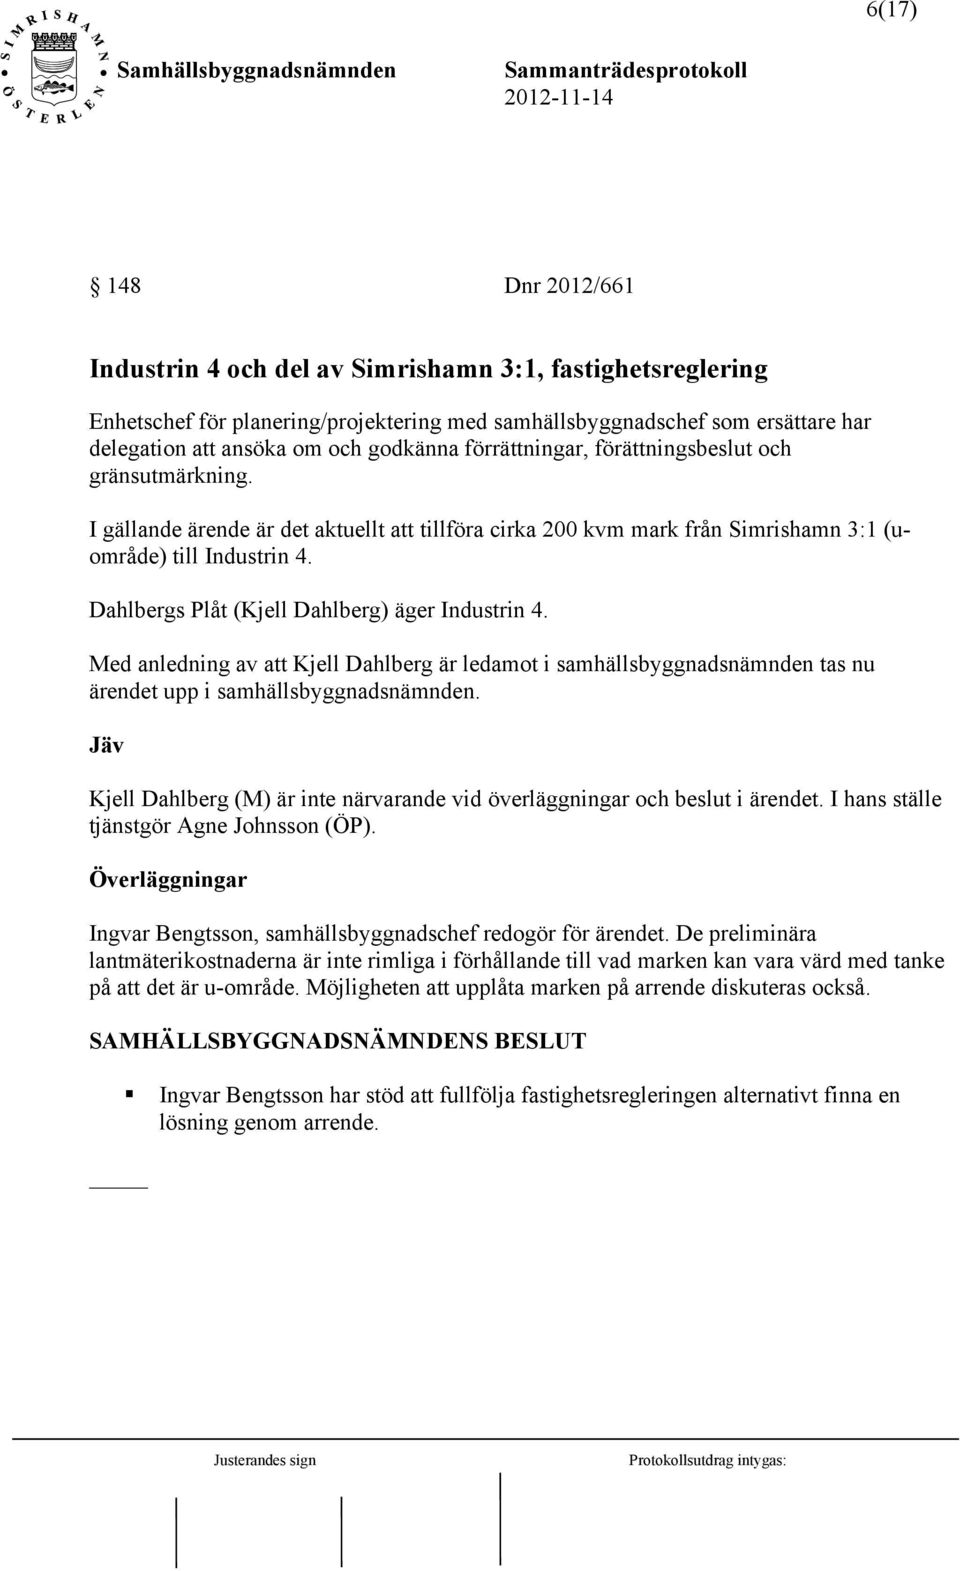 Dahlbergs Plåt (Kjell Dahlberg) äger Industrin 4. Med anledning av att Kjell Dahlberg är ledamot i samhällsbyggnadsnämnden tas nu ärendet upp i samhällsbyggnadsnämnden.